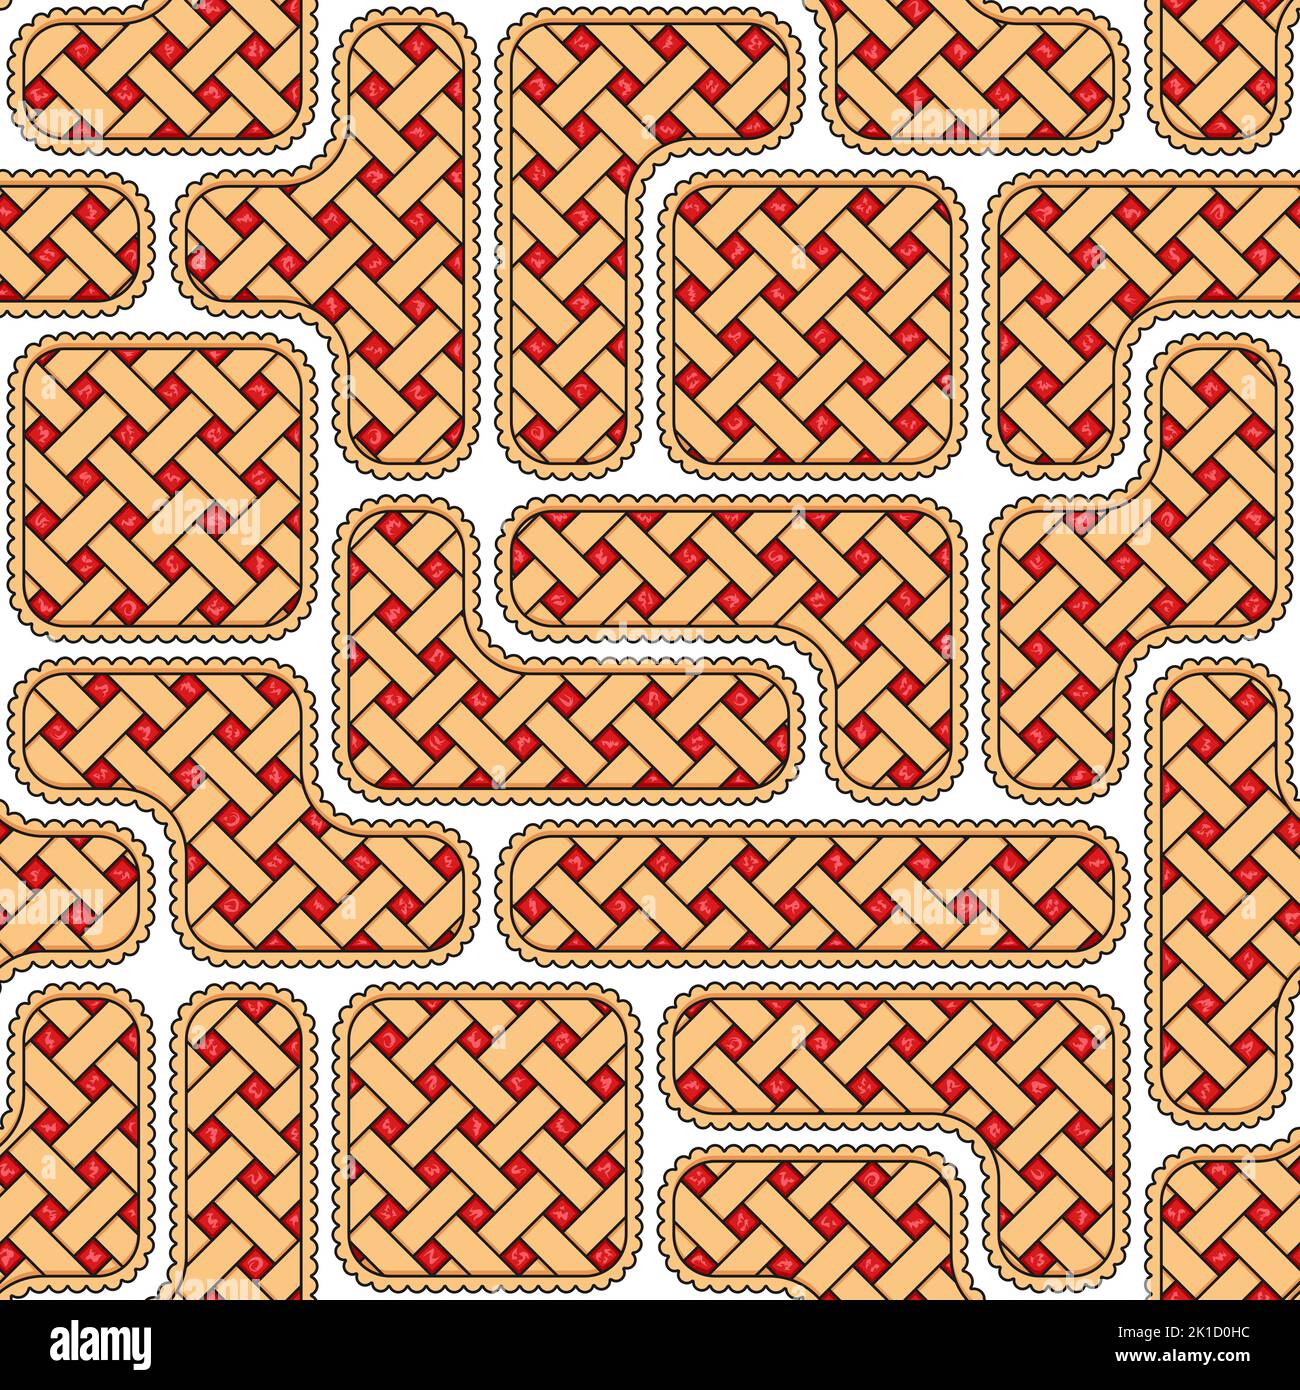 Nahtloses Muster mit Puzzles aus Red Berry Pie. Farbiger Vektorhintergrund auf Weiß. Stock Vektor